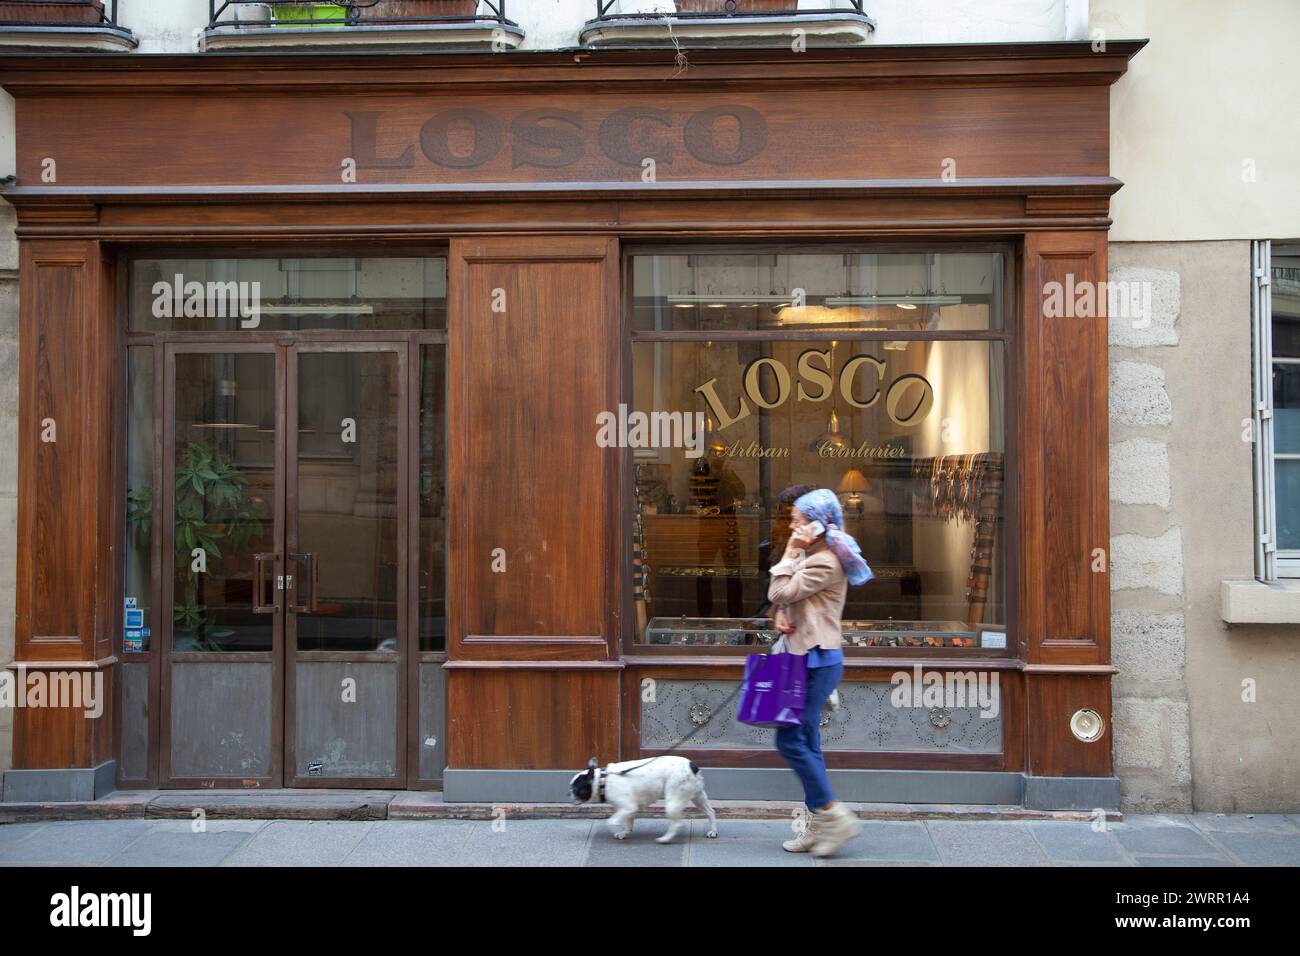 Fabricant de ceintures Boutique LOSCO 20 rue de Sévigné dans le quartier du Marais à Paris 2014. Façade en bois de la boutique avec des gens qui passent. Banque D'Images